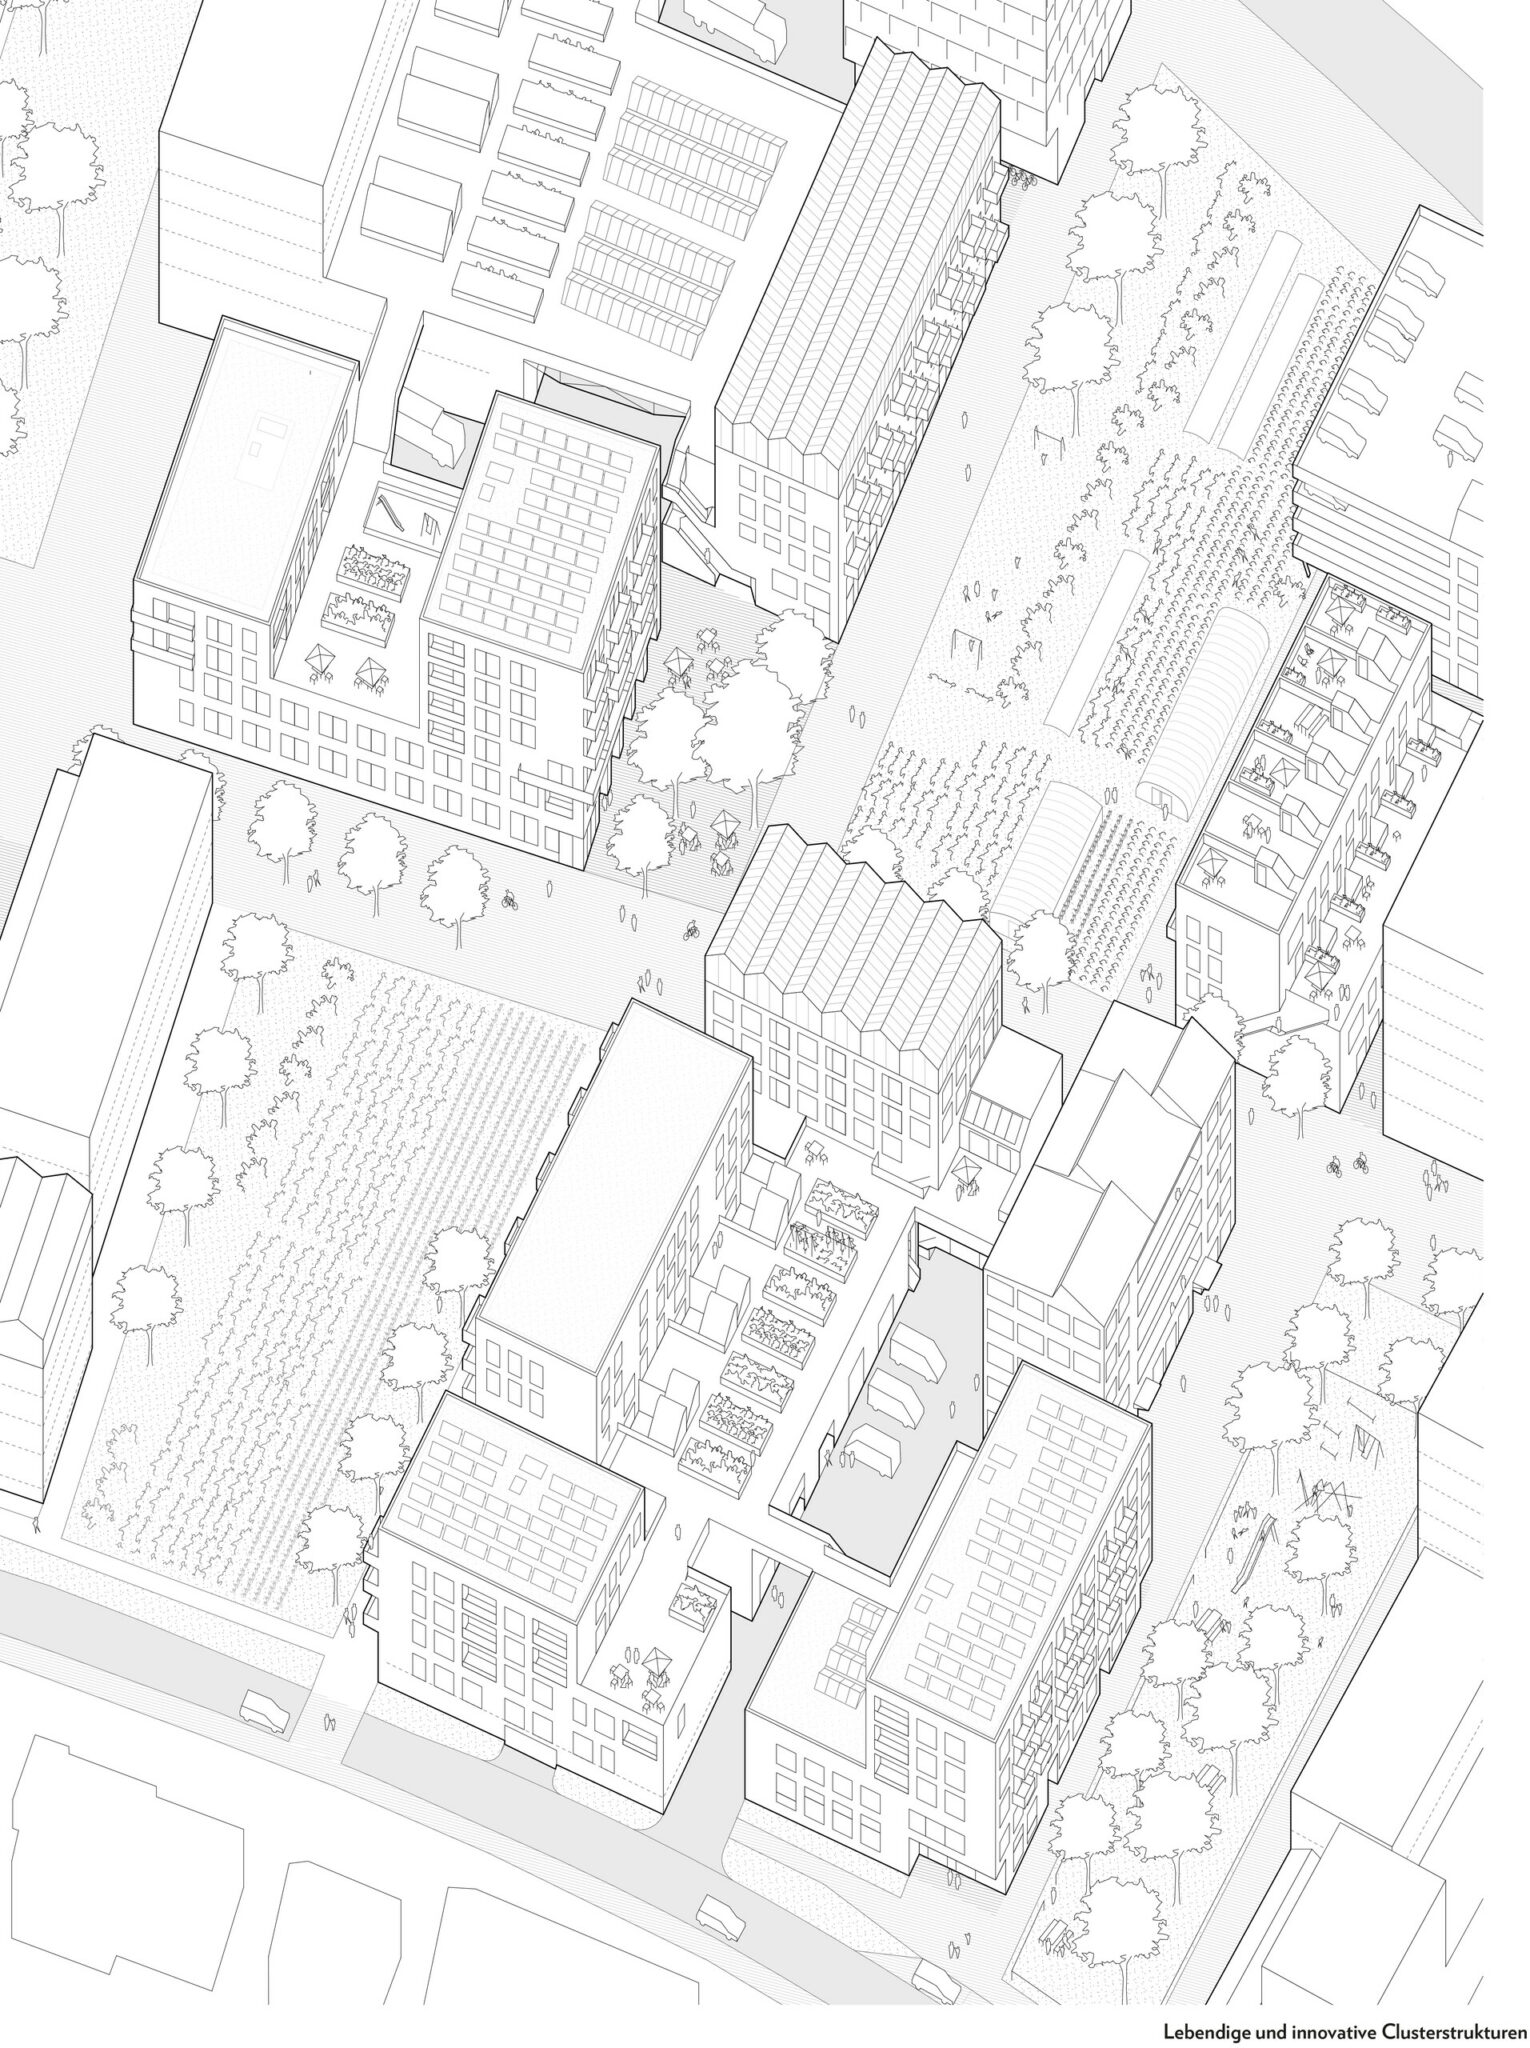 Ausschnitt des städtebaulichen Entwurfs von JOTT architecture & urbanism für das IBA’27-Projekt »Produktives Stadtquartier Winnenden«: Gemischte, dichte und urbane Baublöcke (»Produktive Cluster«) in großzügigen Freiräumen (Bild: JOTT architecture & urbanism GbR)